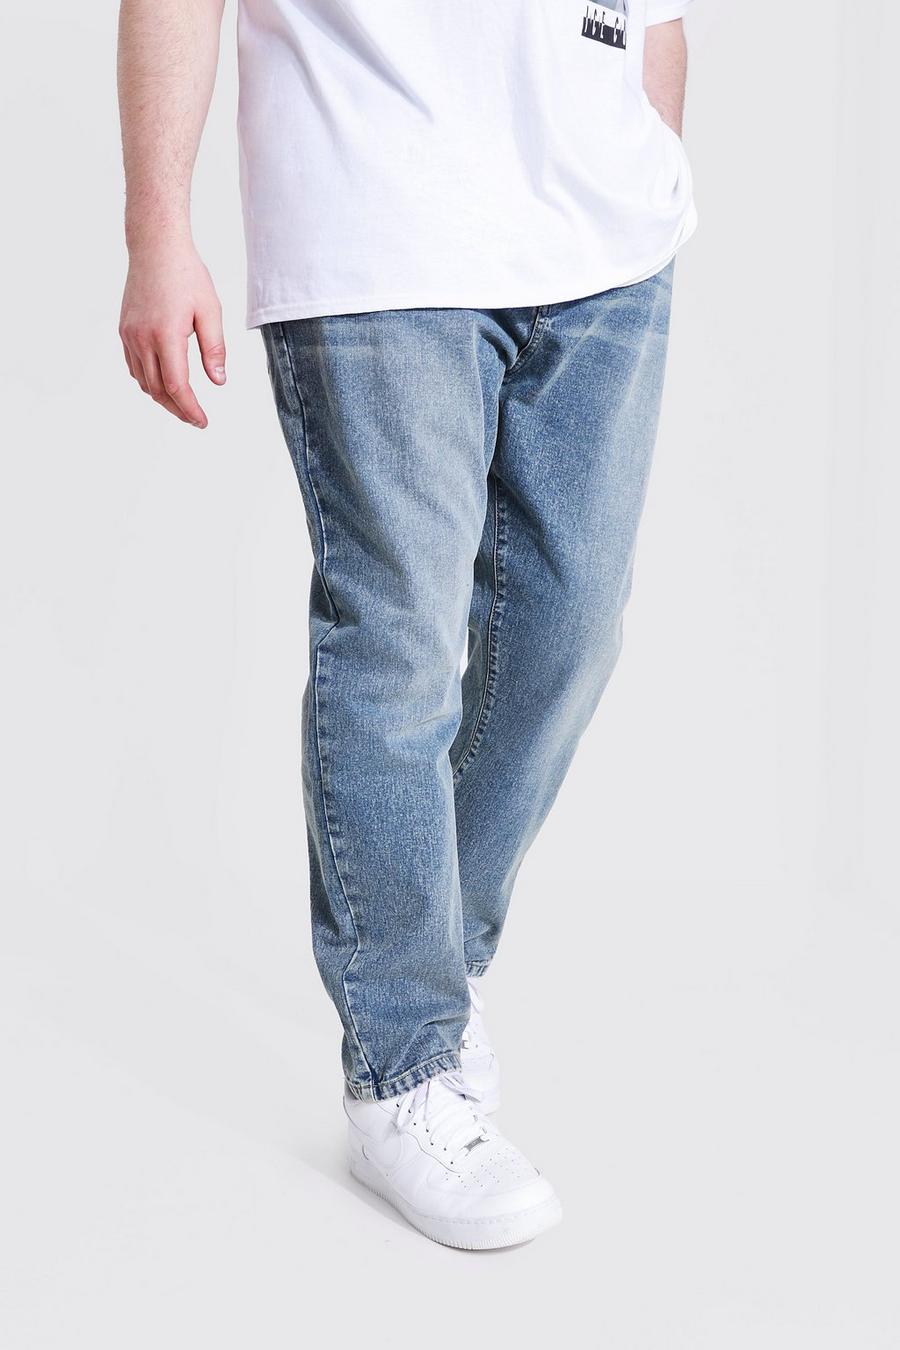 כחול וינטג' ג'ינס מבד קשיח בגזרה צרה למידות גדולות image number 1